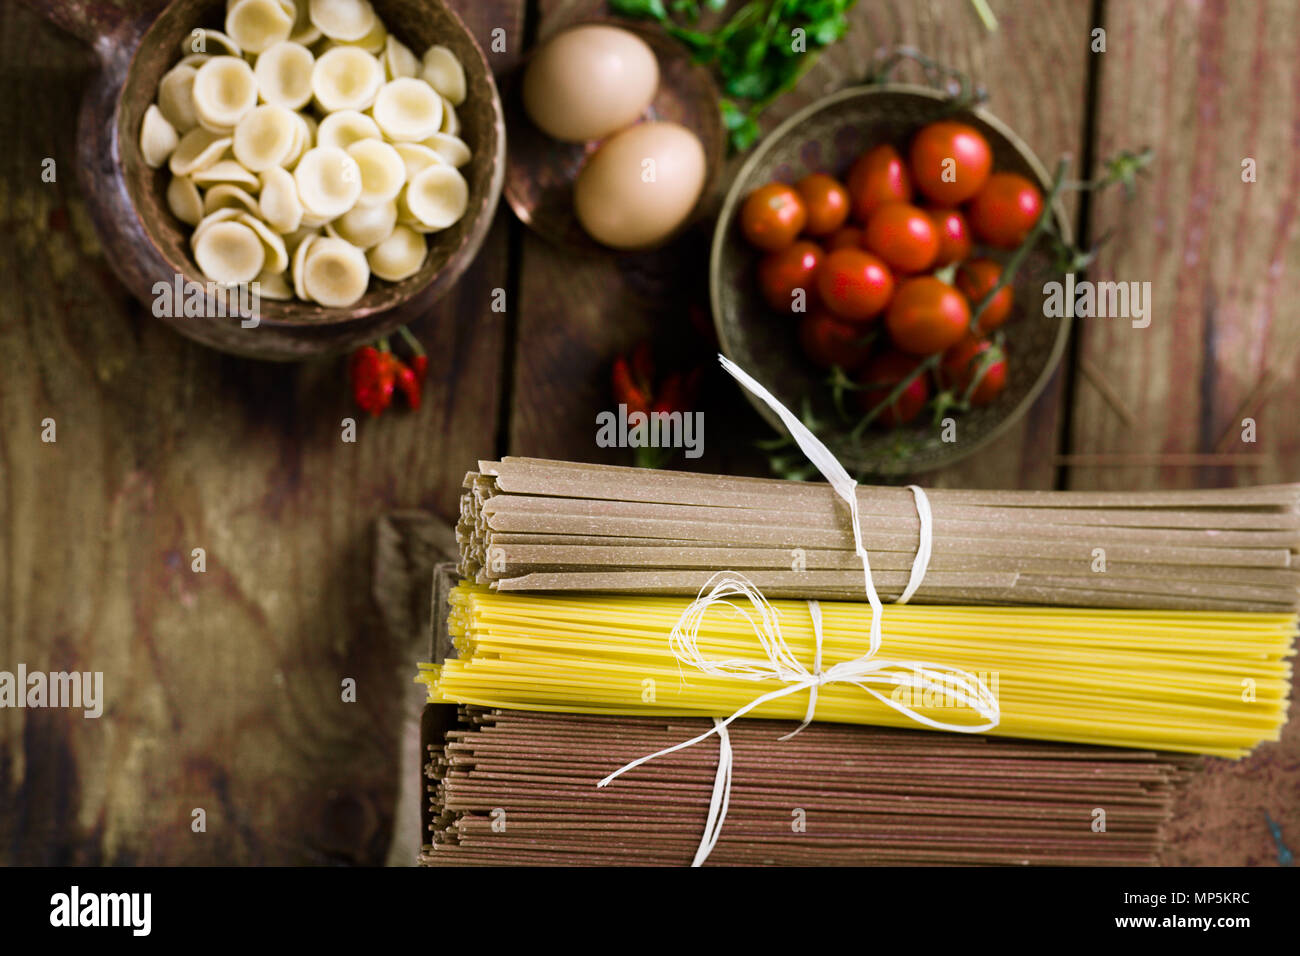 Kochen Konzept. Pasta mit Zutaten. Tomaten, Spaghetti, Eier und Kräuter Stockfoto